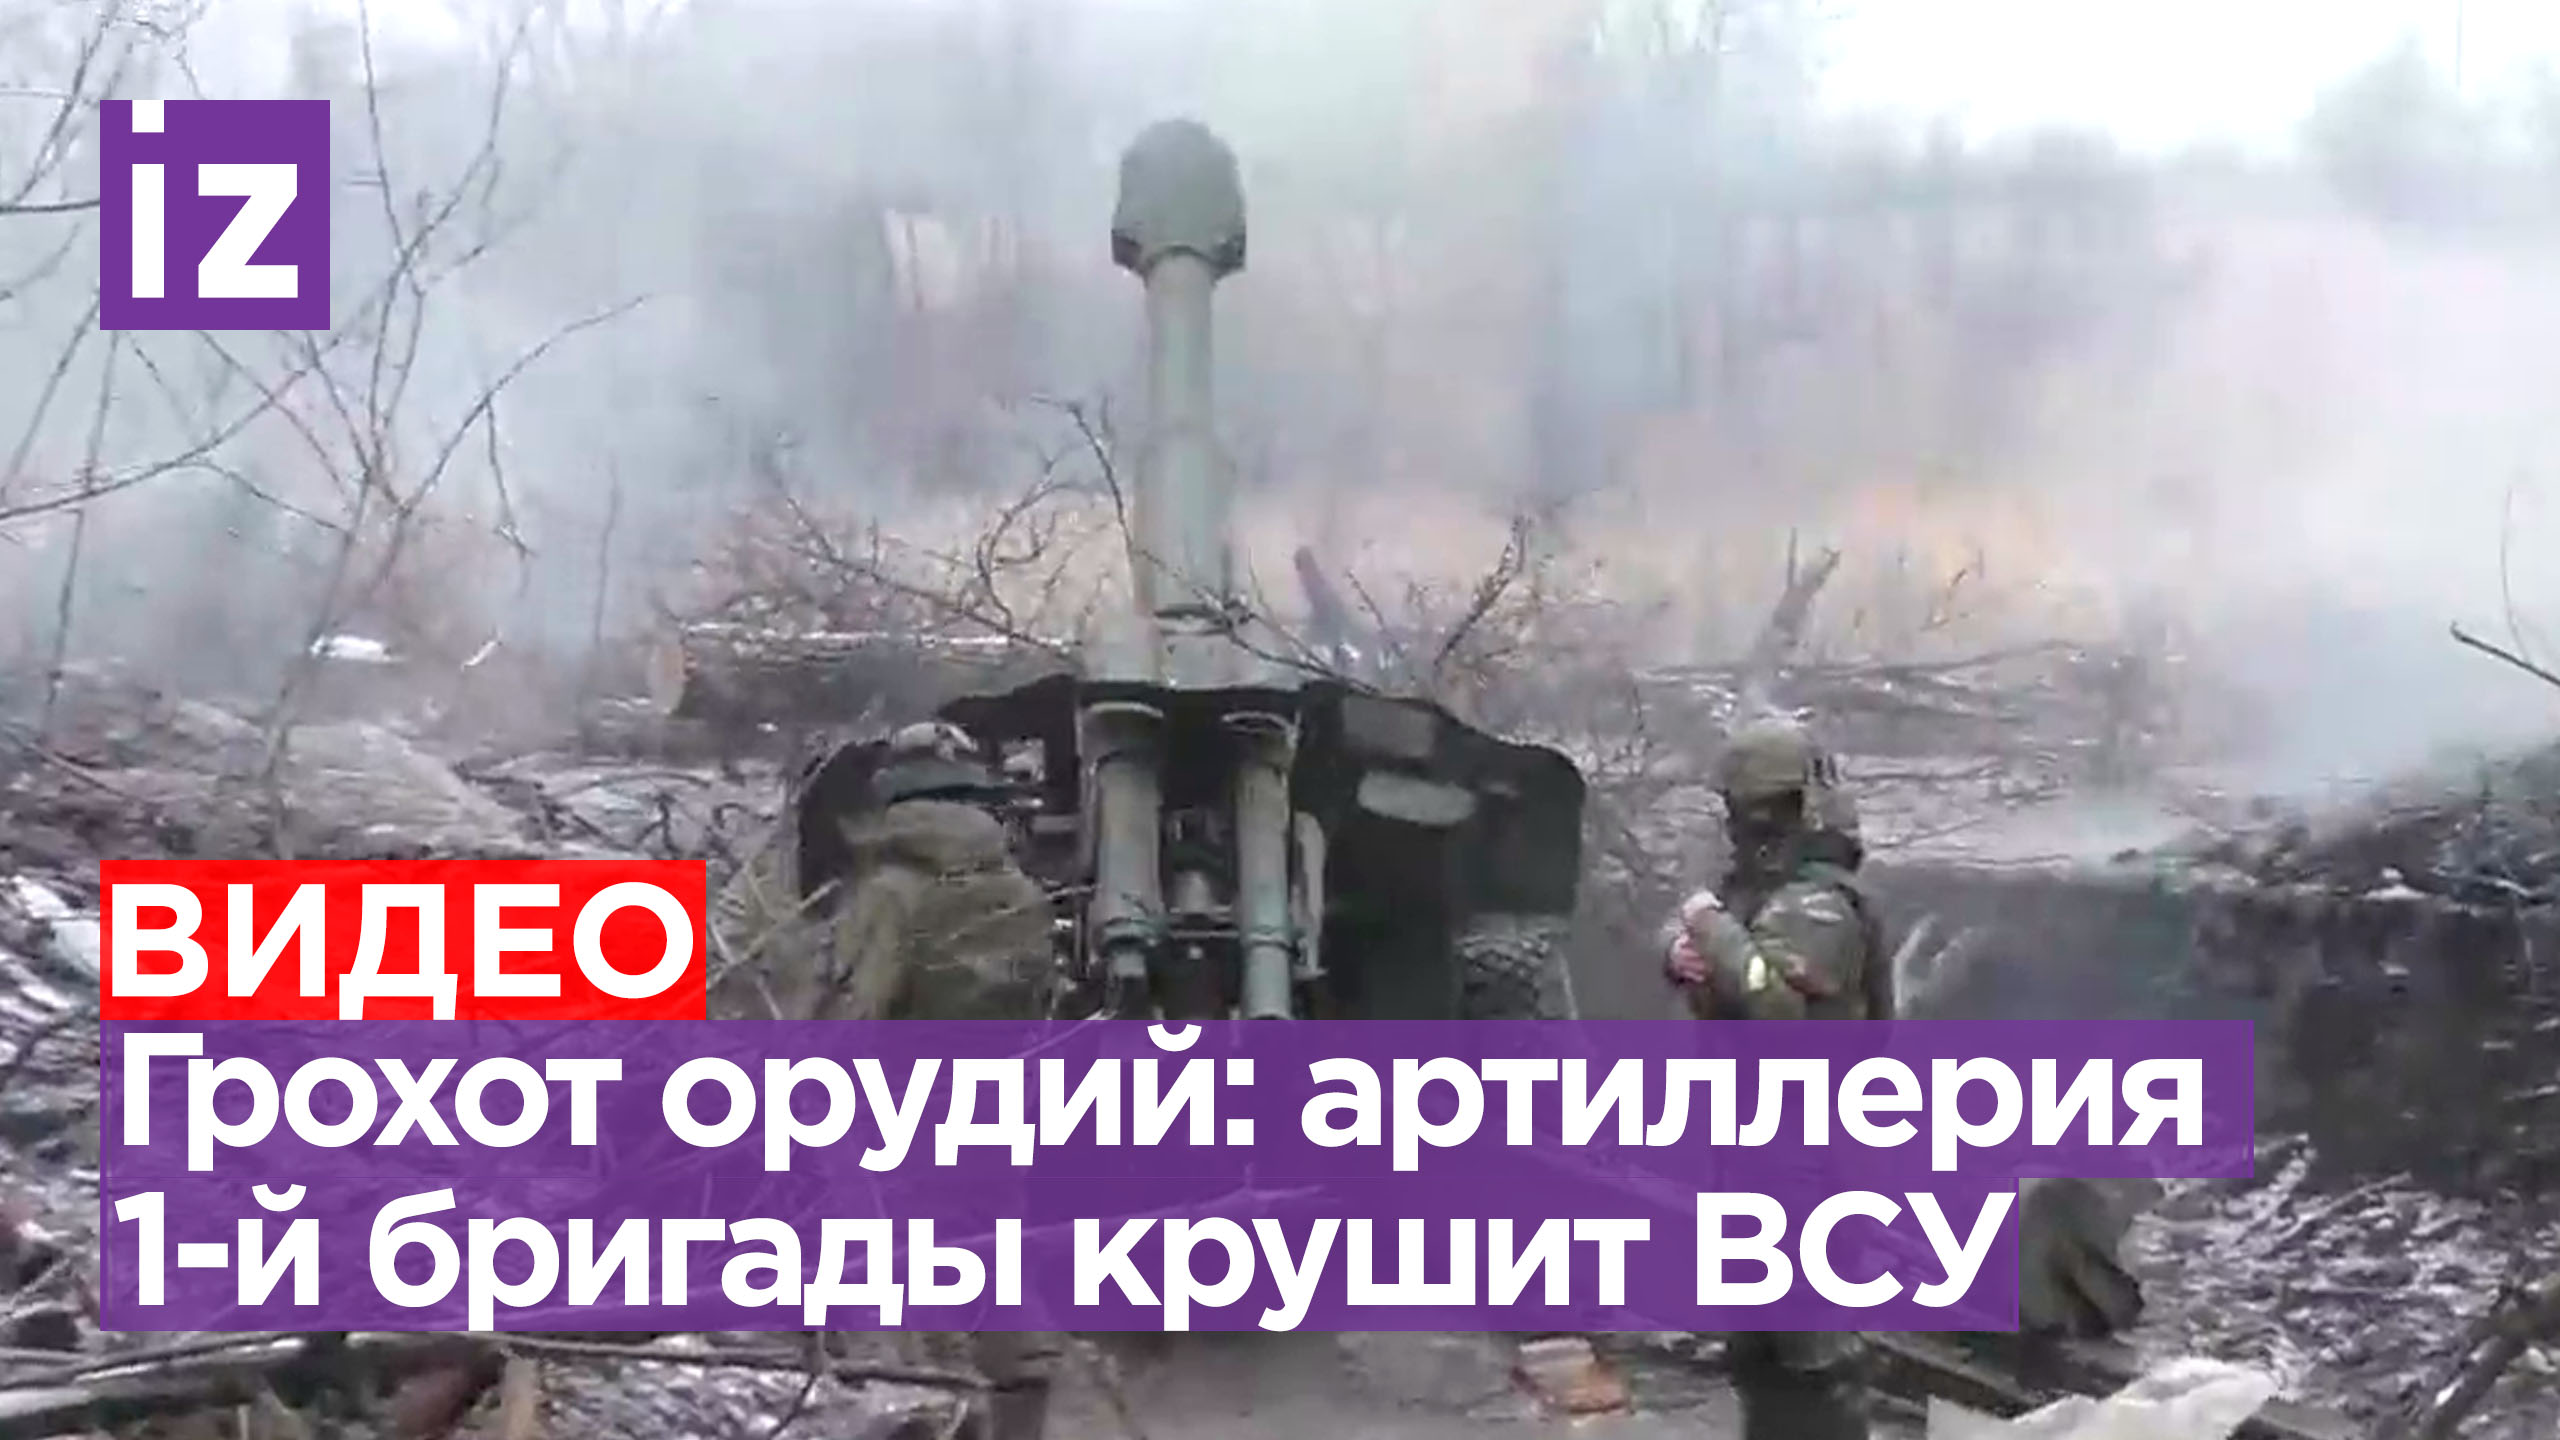 Под залп снаряда: кадры работы артиллерии 1 бригады по укреплениям врага. Видео Народной милиции ДНР